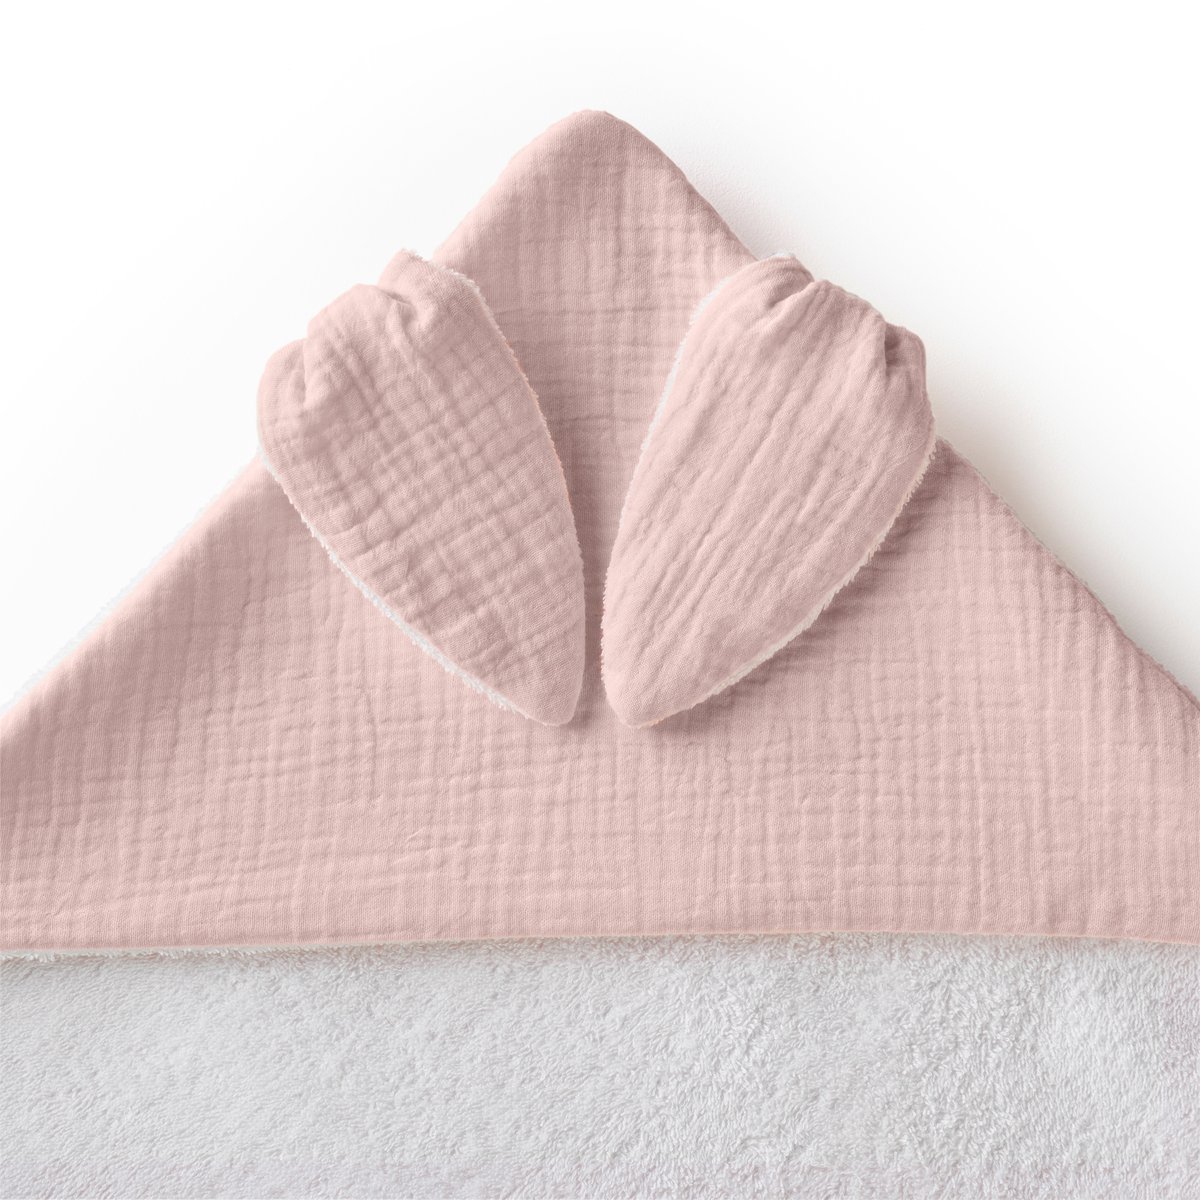 Накидка La Redoute Для ванной из хлопчатобумажной газовой ткани для новорожденного Kumla 70 x 70 см розовый, размер 70 x 70 см - фото 4